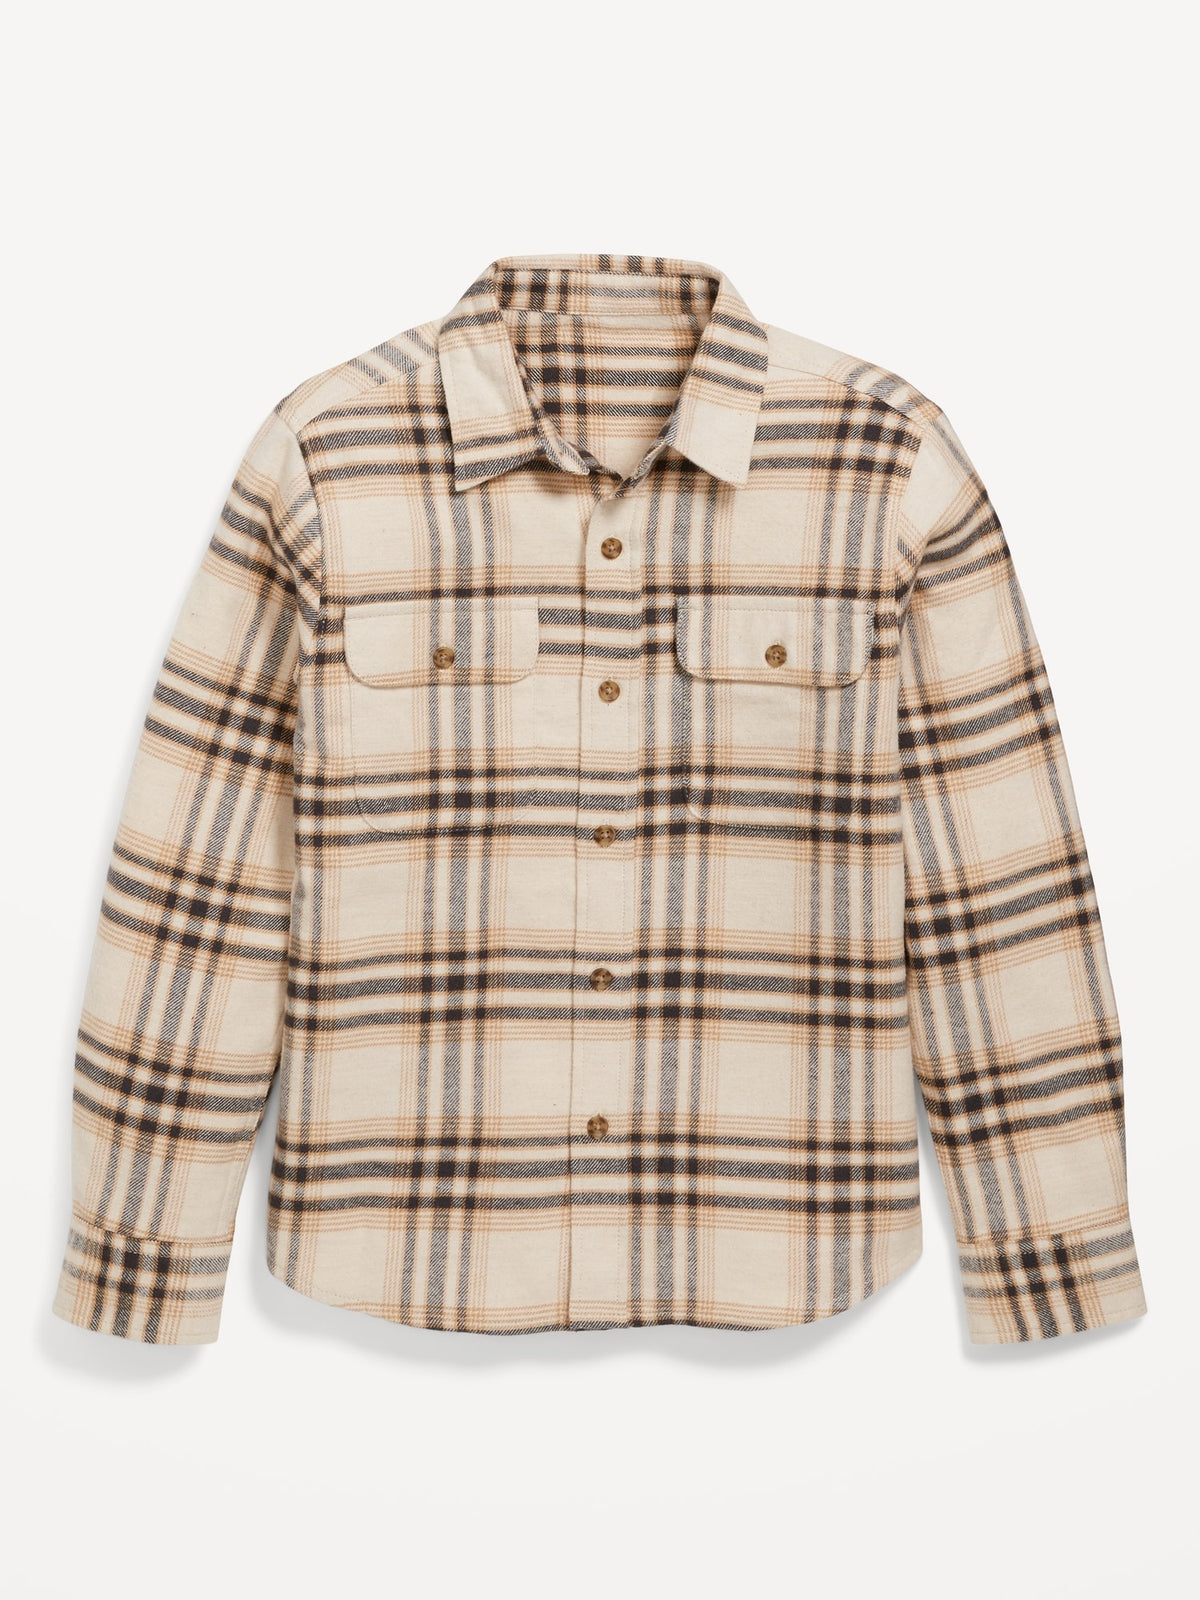 Soft-Brushed Flannel Pocket Shirt for Boys, Old Navy